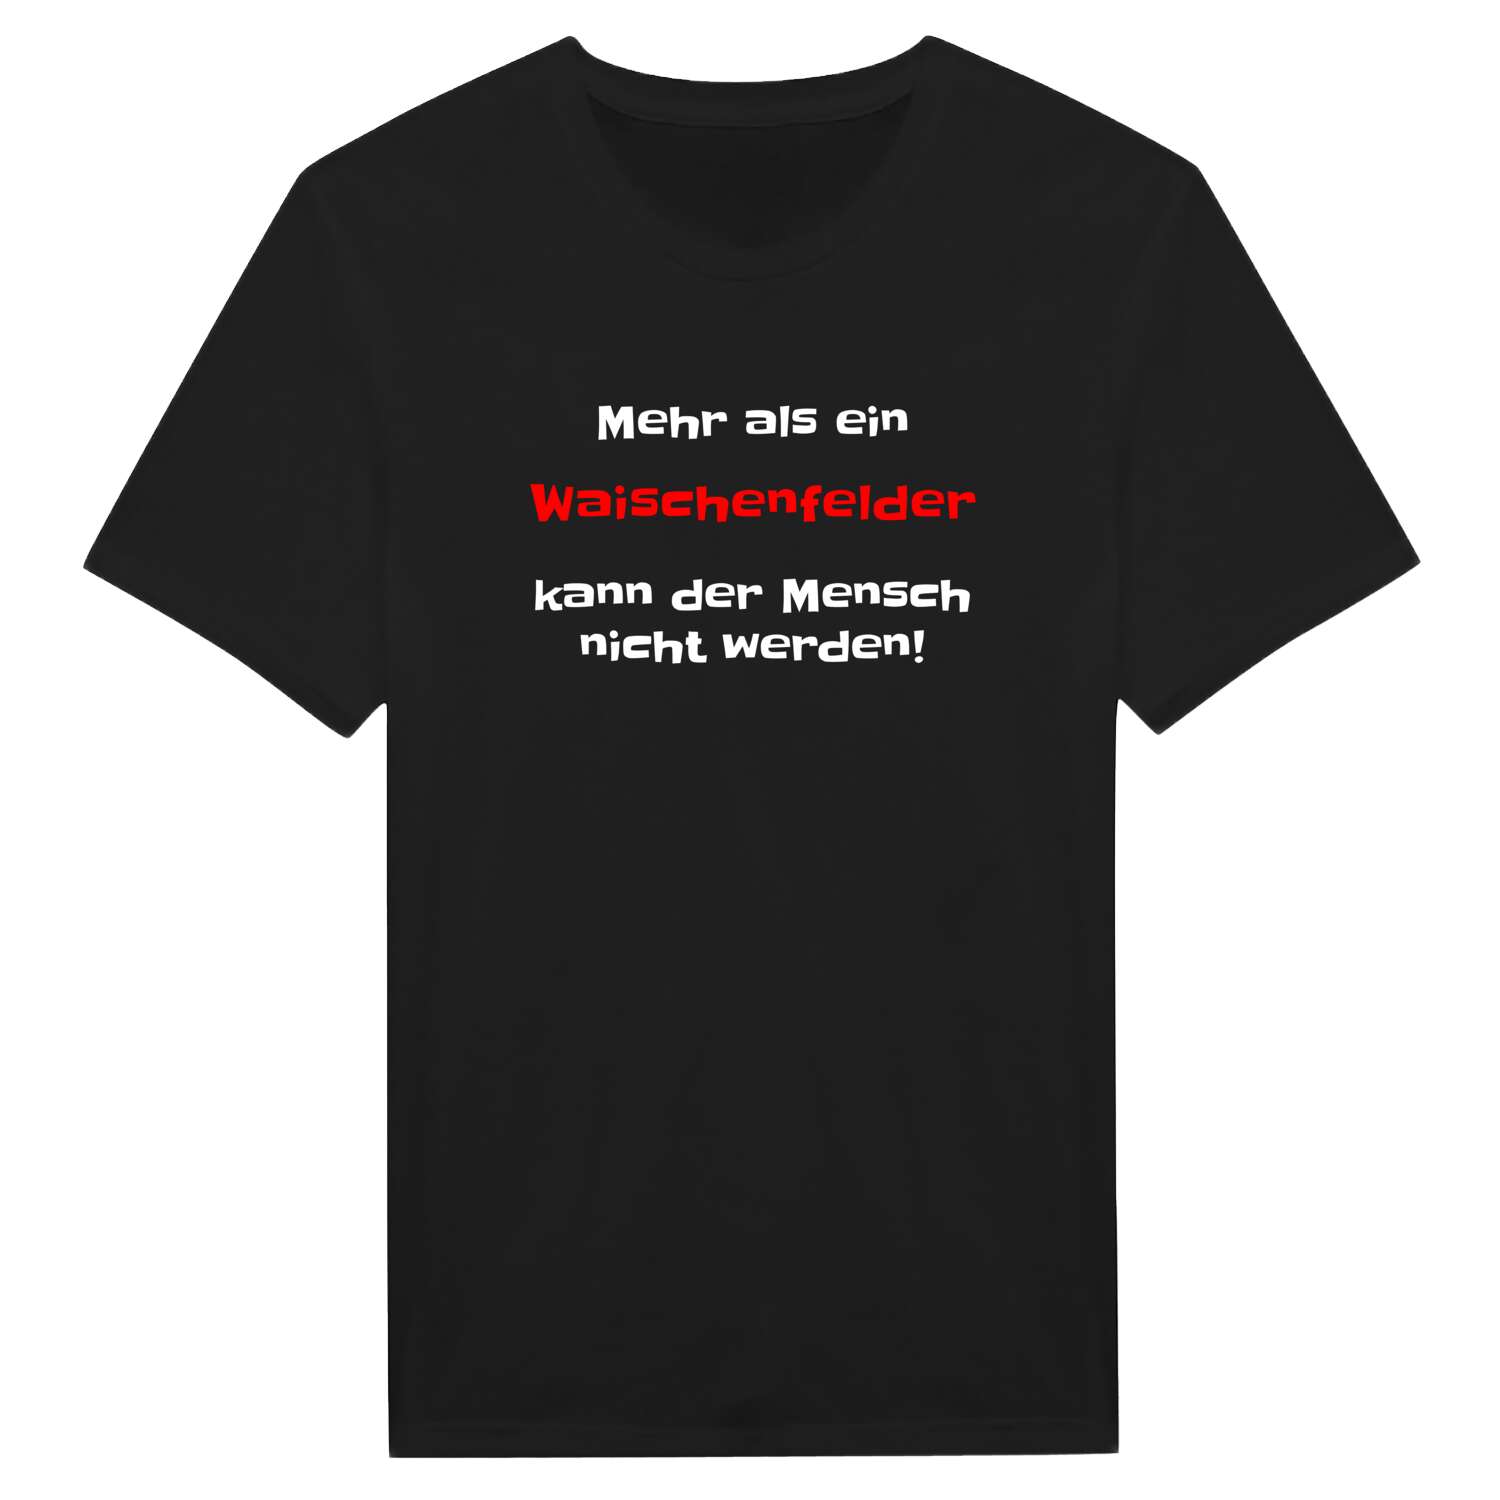 Waischenfeld T-Shirt »Mehr als ein«